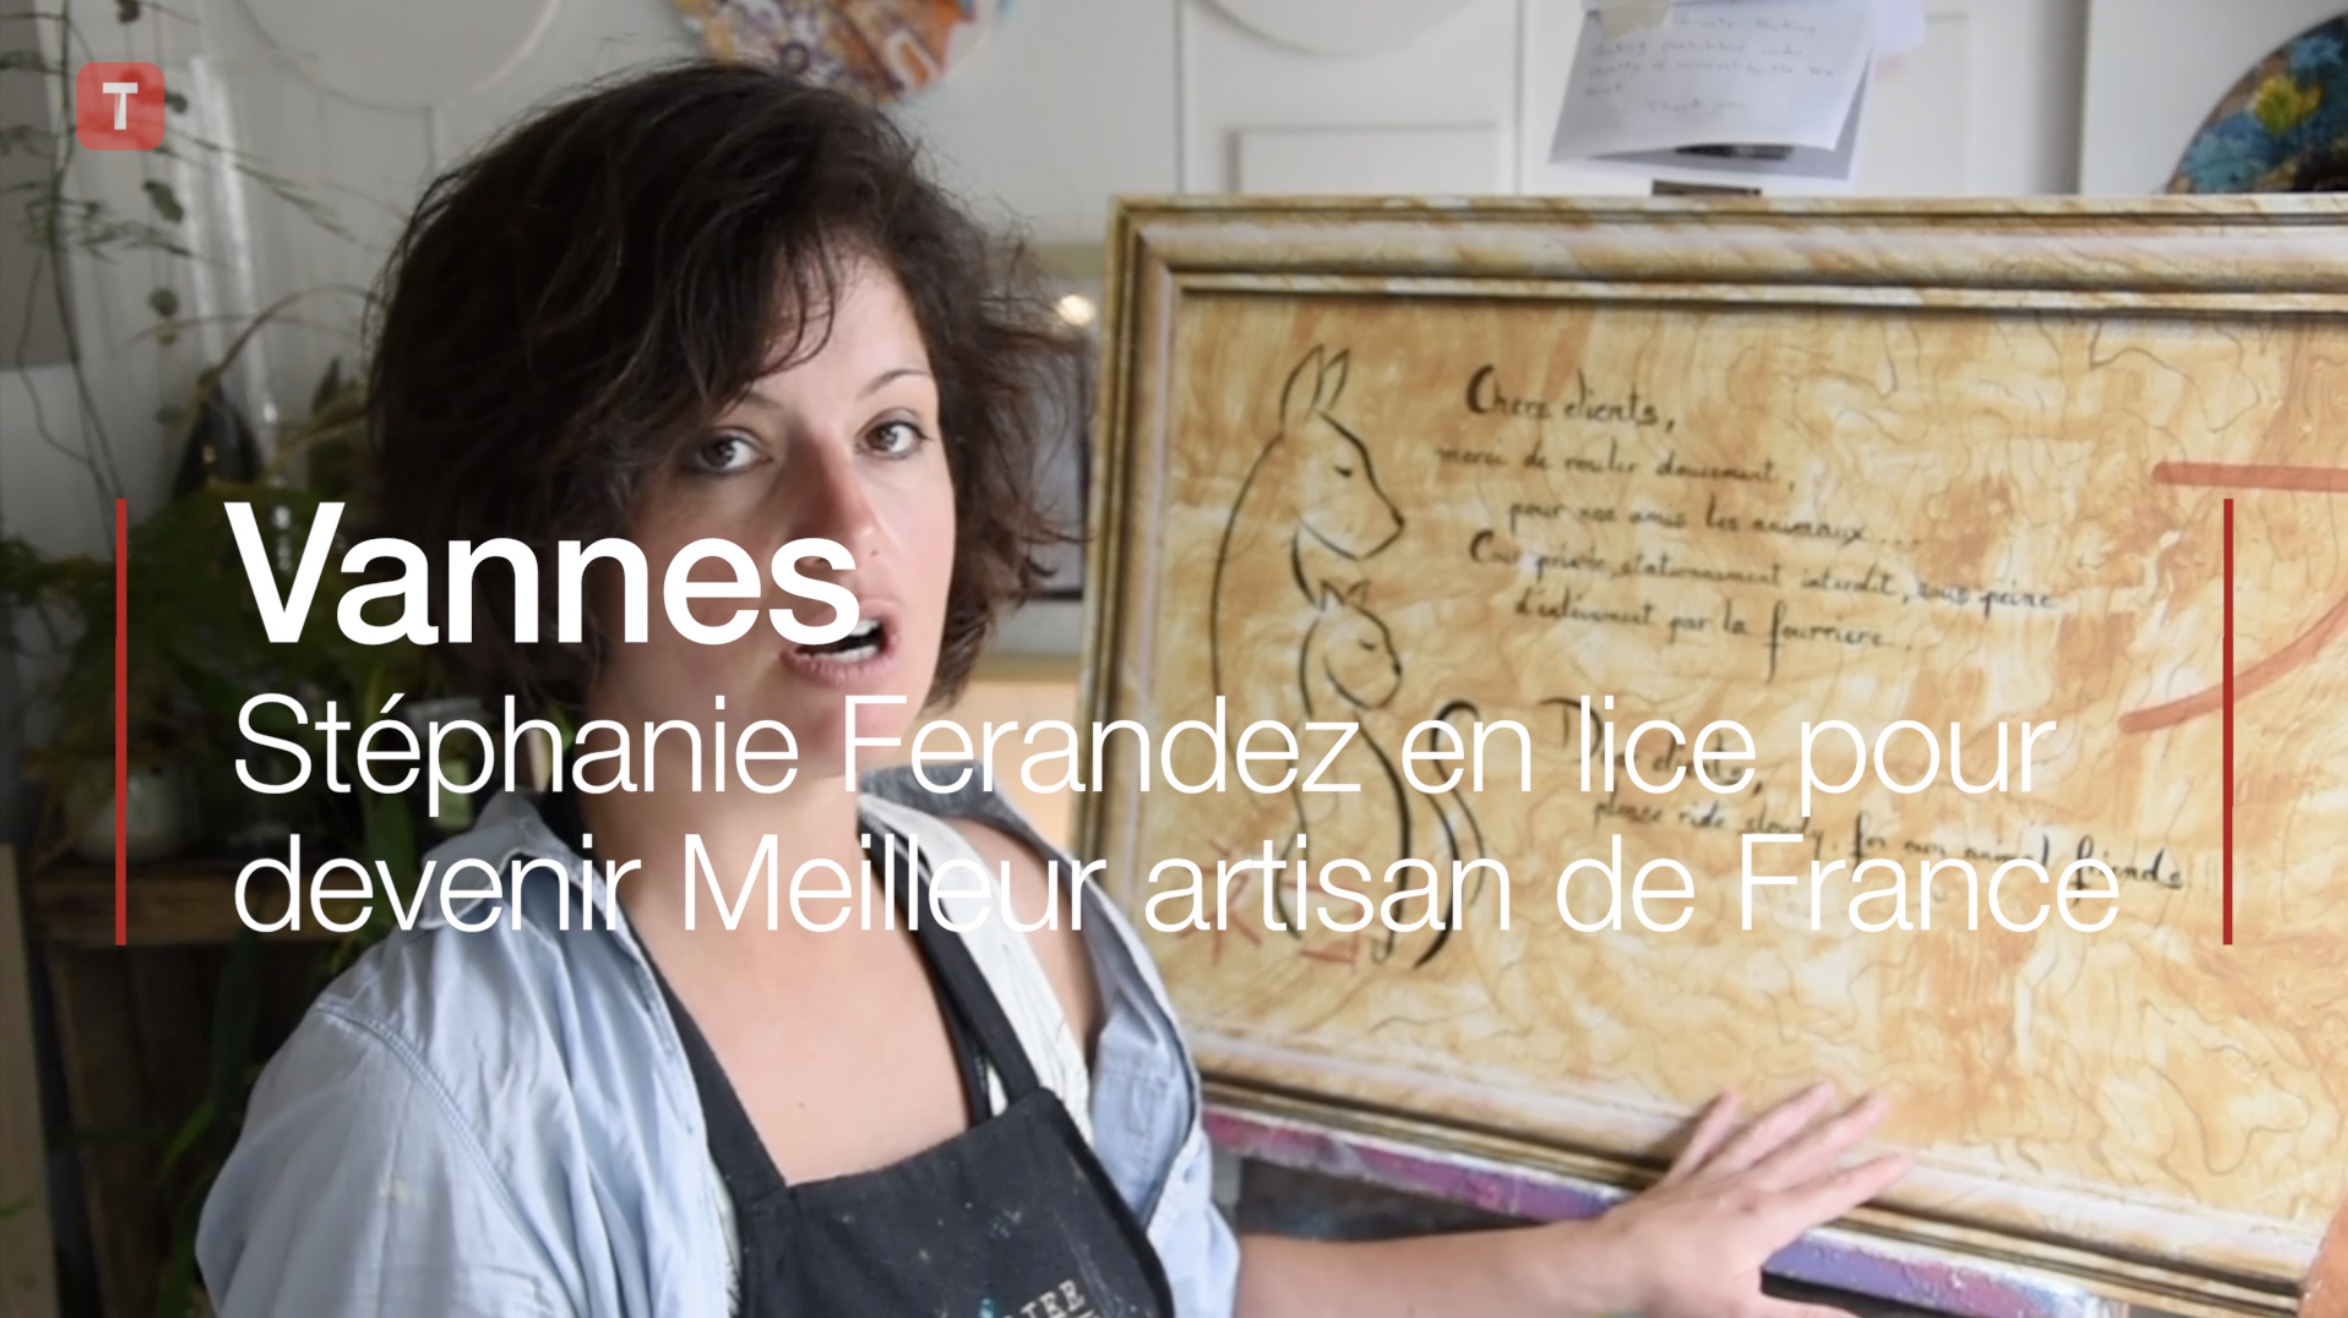 Vannes. Stéphanie Ferandez en lice pour devenir Meilleur artisan de France (Le Télégramme)